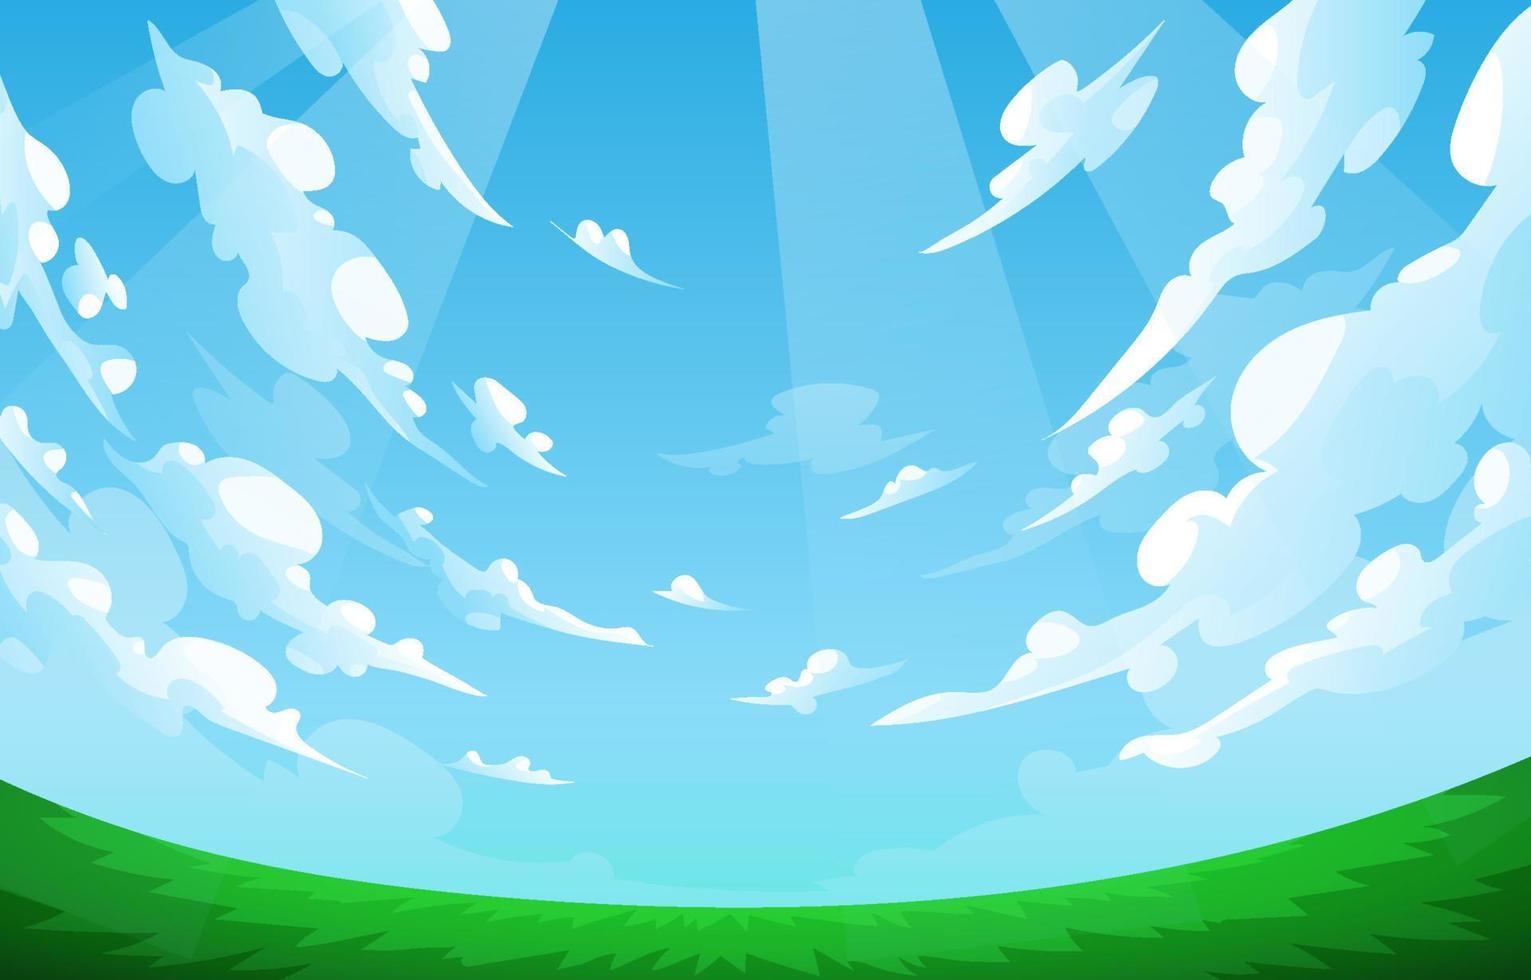 Rasenfläche mit blauem Himmelshintergrund vektor